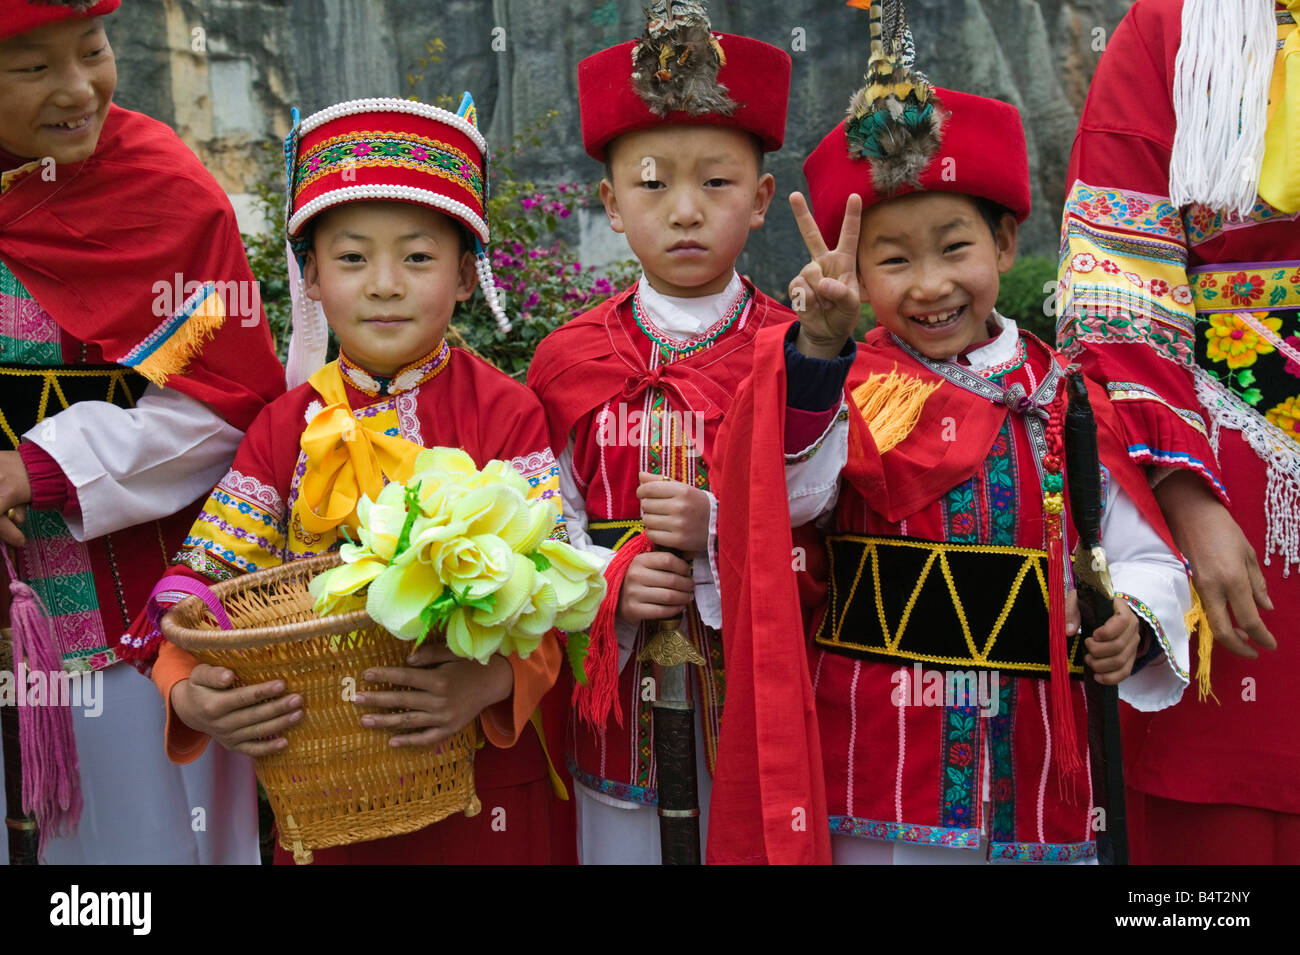 Chine, Province du Yunnan, Kunming, Shilin, la forêt de pierre, les visiteurs chinois habillés en costumes locaux Personnes Sani Banque D'Images